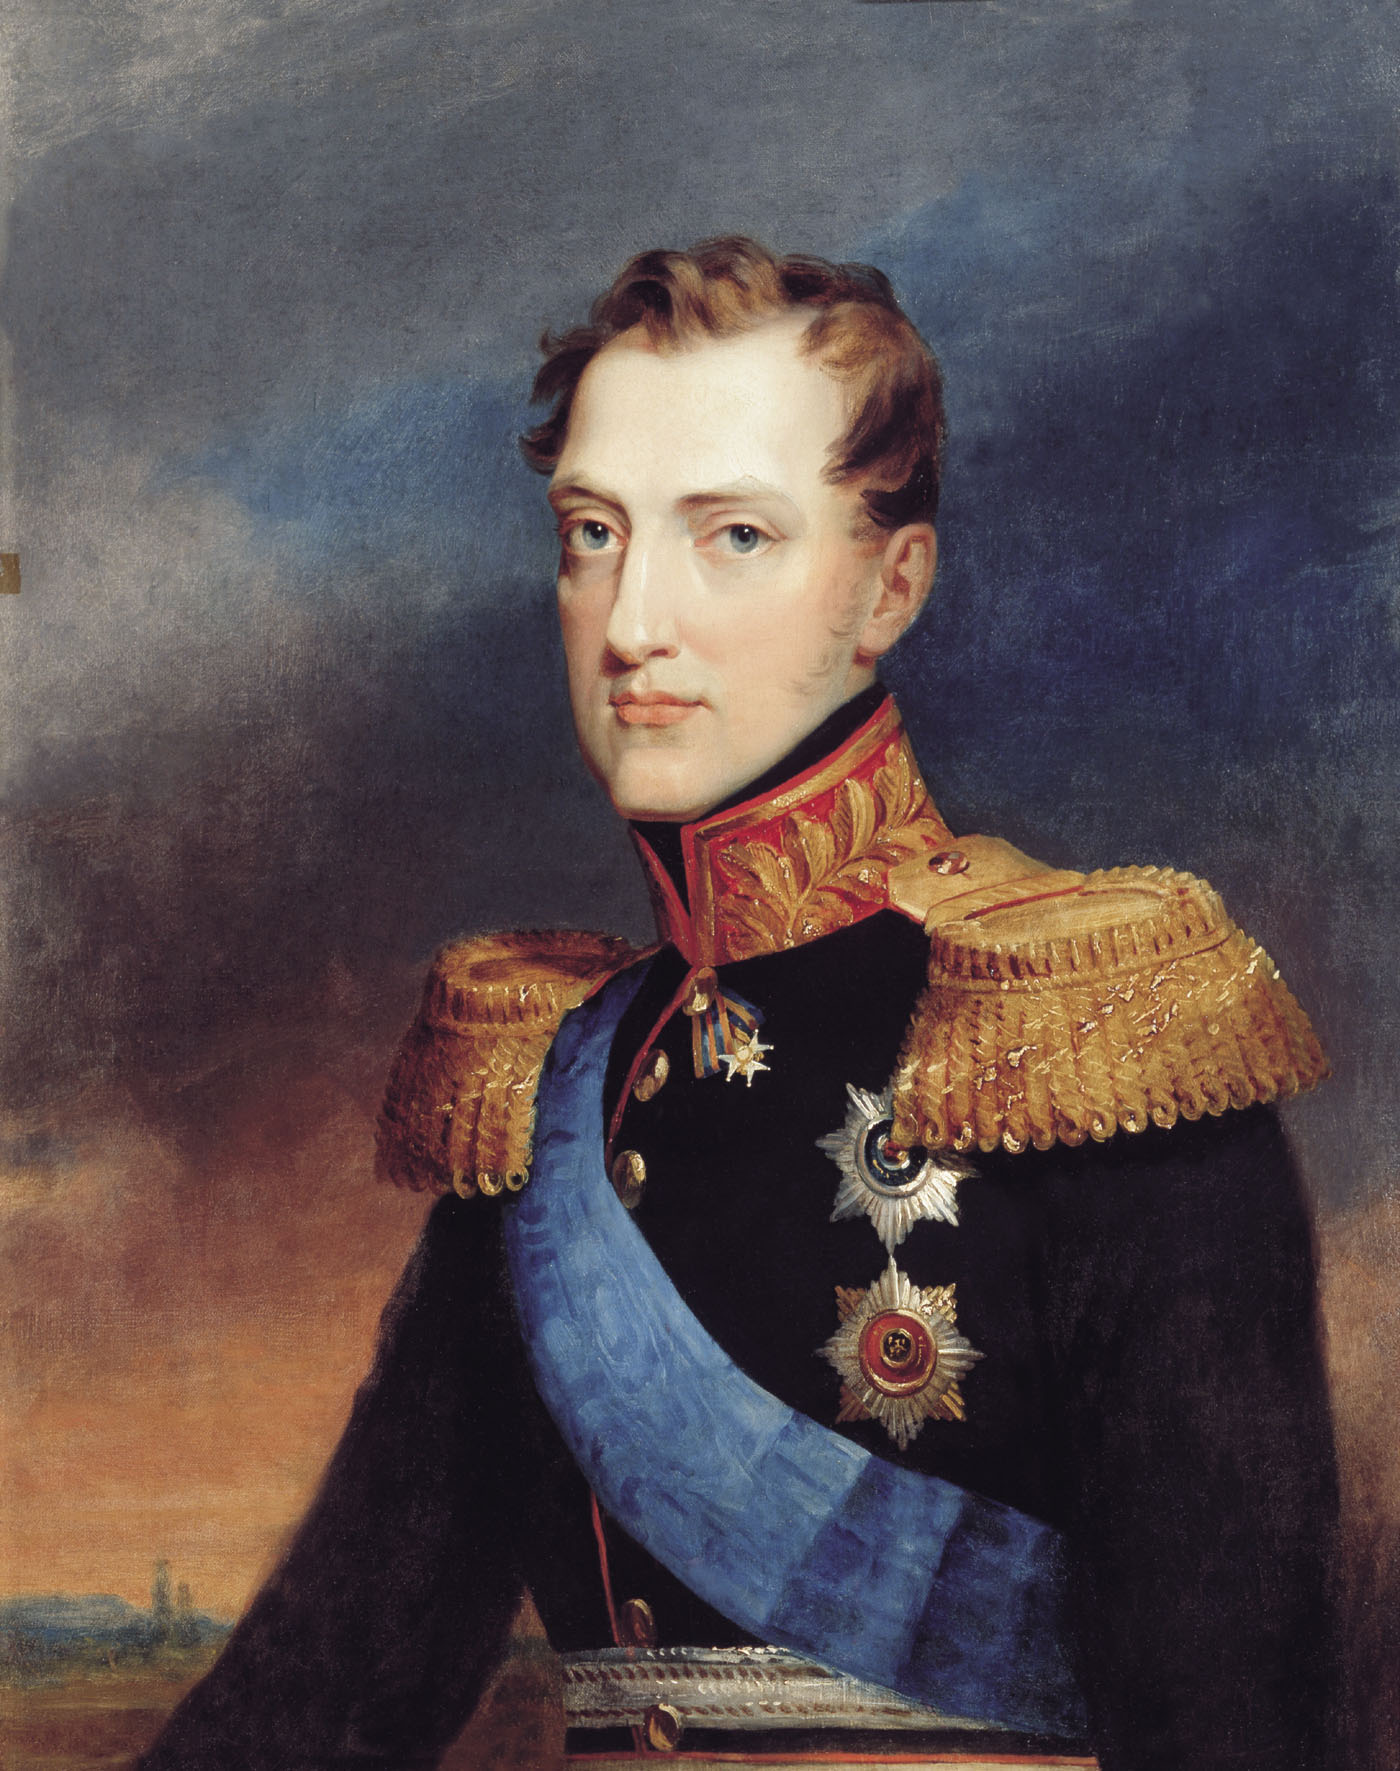 Голике. Портрет великого князя Николая Павловича. 1820-е